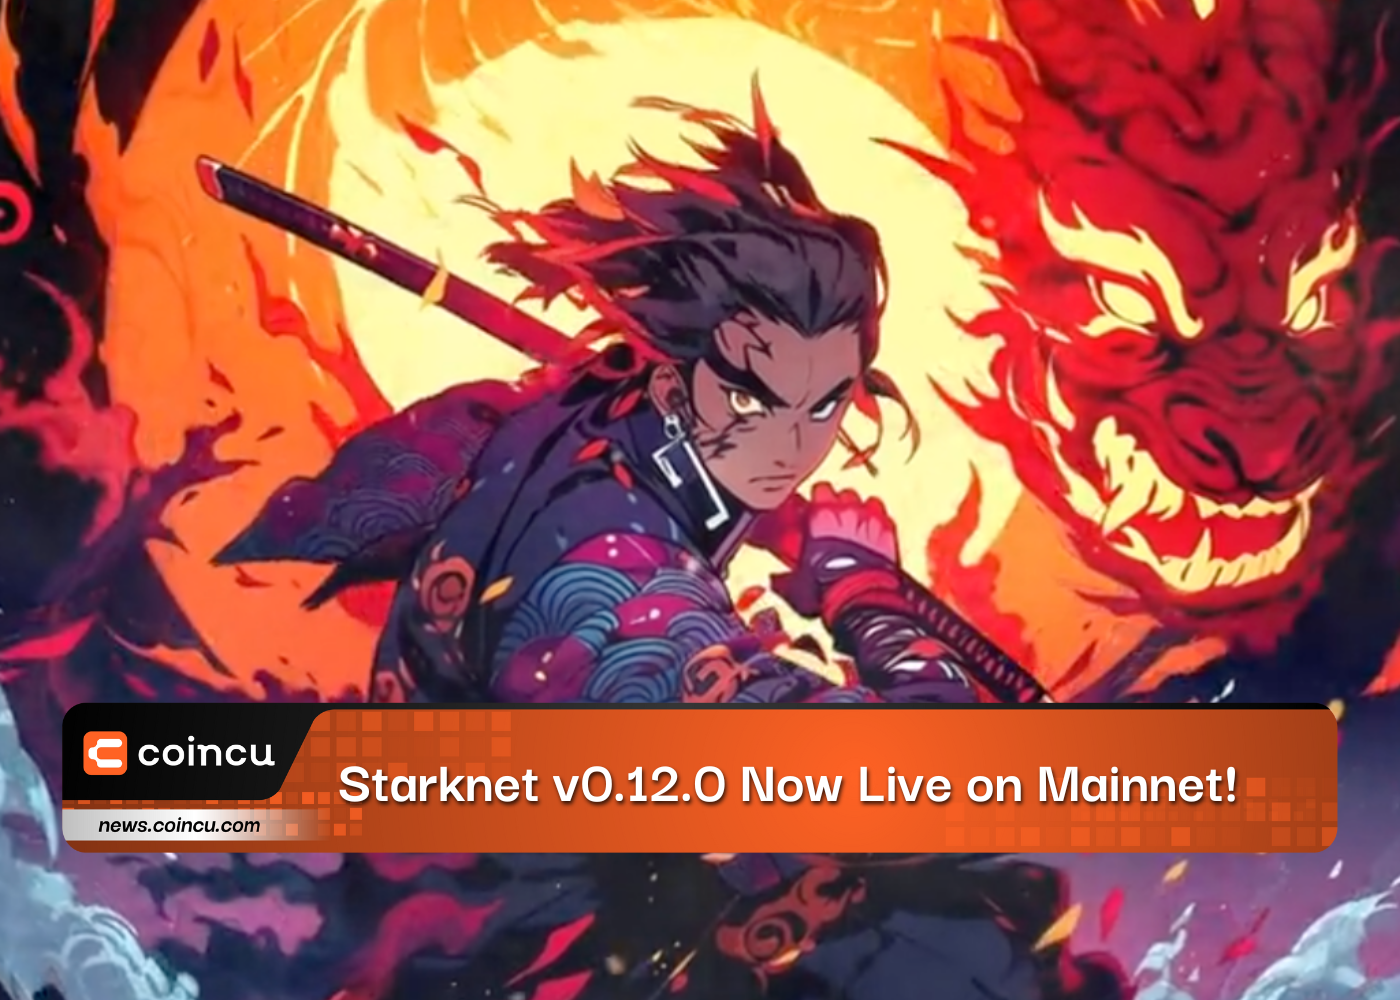 Breaking News: Starknet v0.12.0 Now Live on Mainnet!